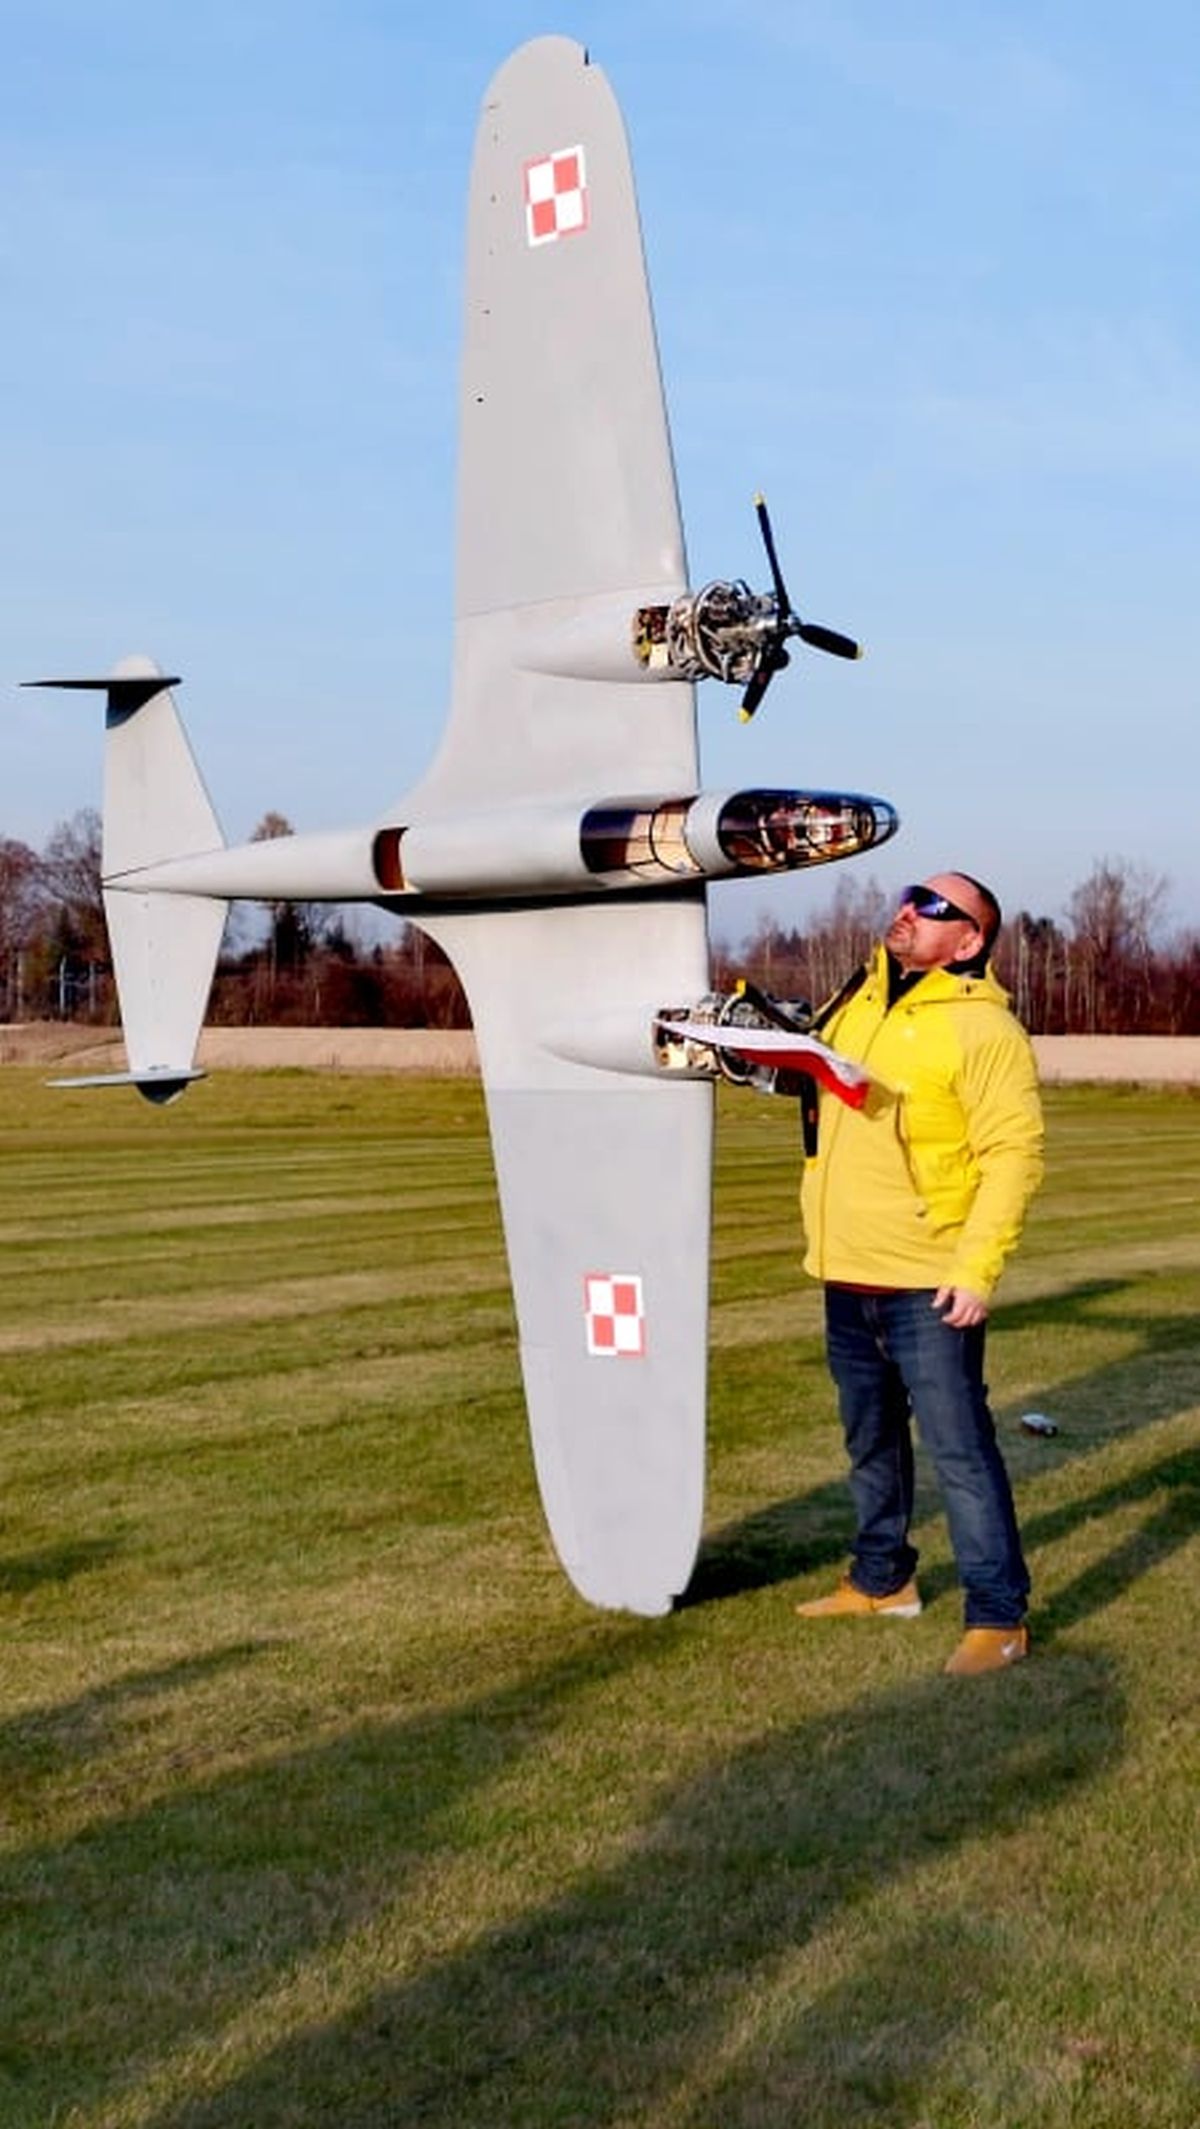 Legenda polskiego lotnictwa znów wzbiła się w powietrze. Tym razem w mniejszej skali (zdjęcia, wideo)